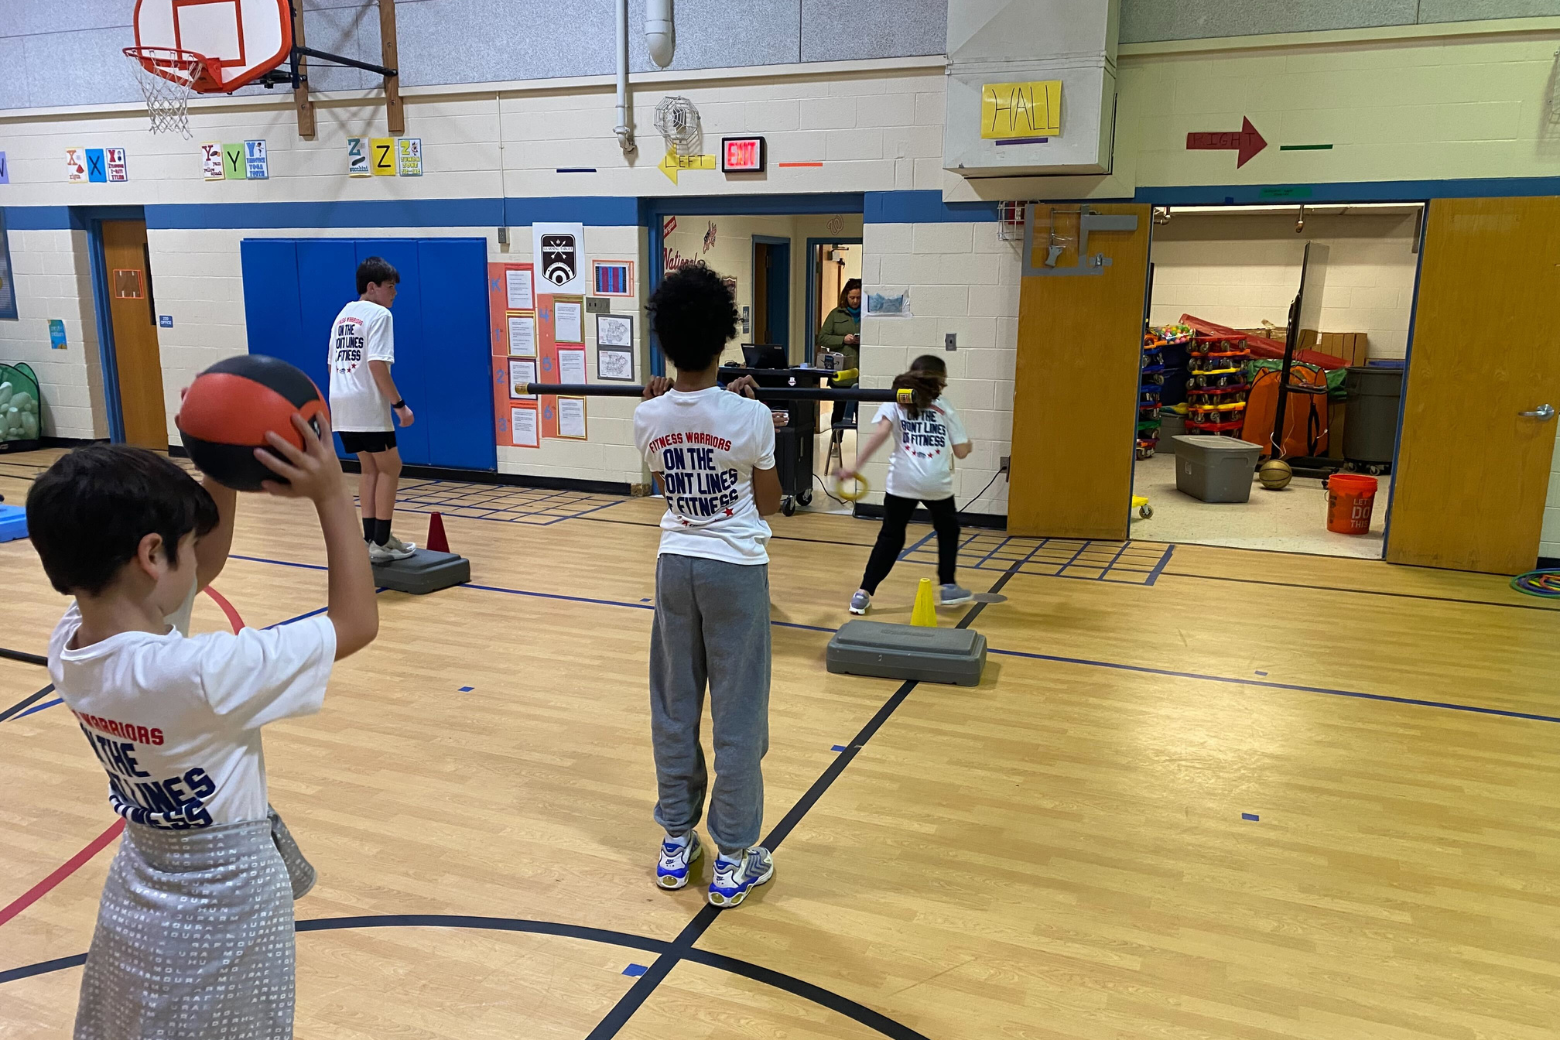 跳跃俯卧撑、慢跑和有氧保龄球成为这所费尔法克斯县小学的晨间活动